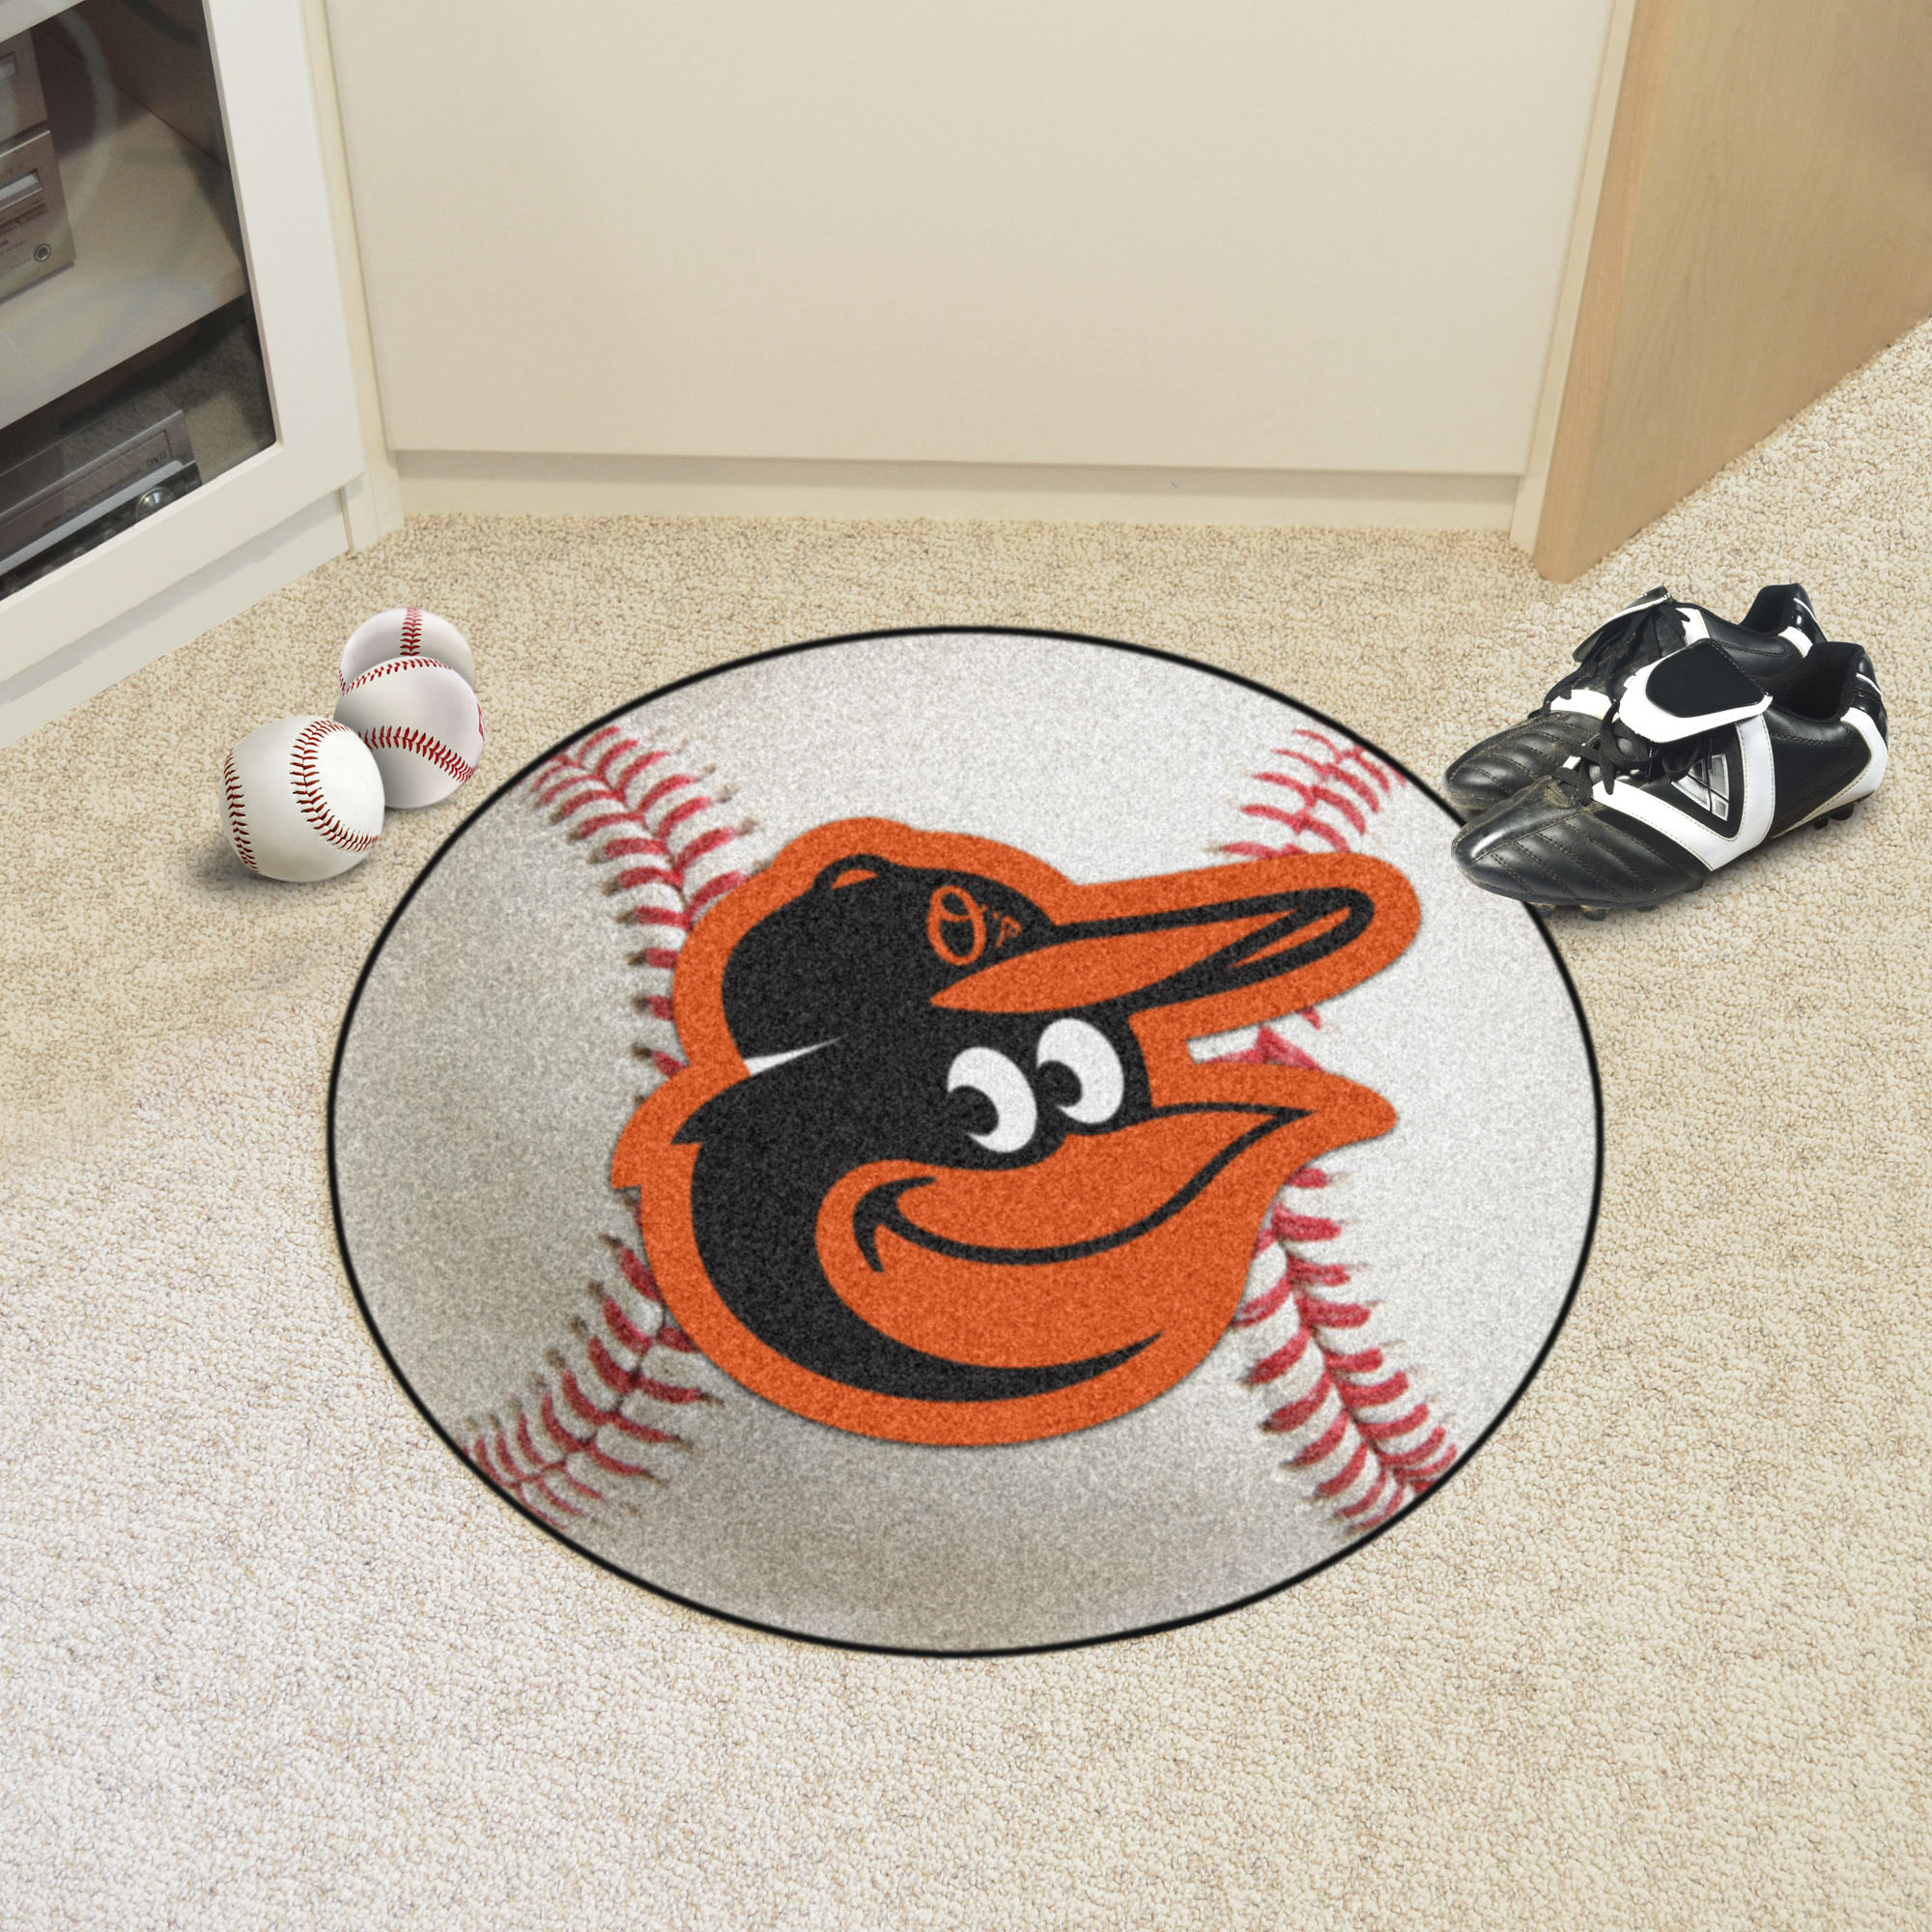 Baltimore Orioles Baseball Shaped Area Rug – 22 x 35 (Field & Logo: Mascot on Baseball)